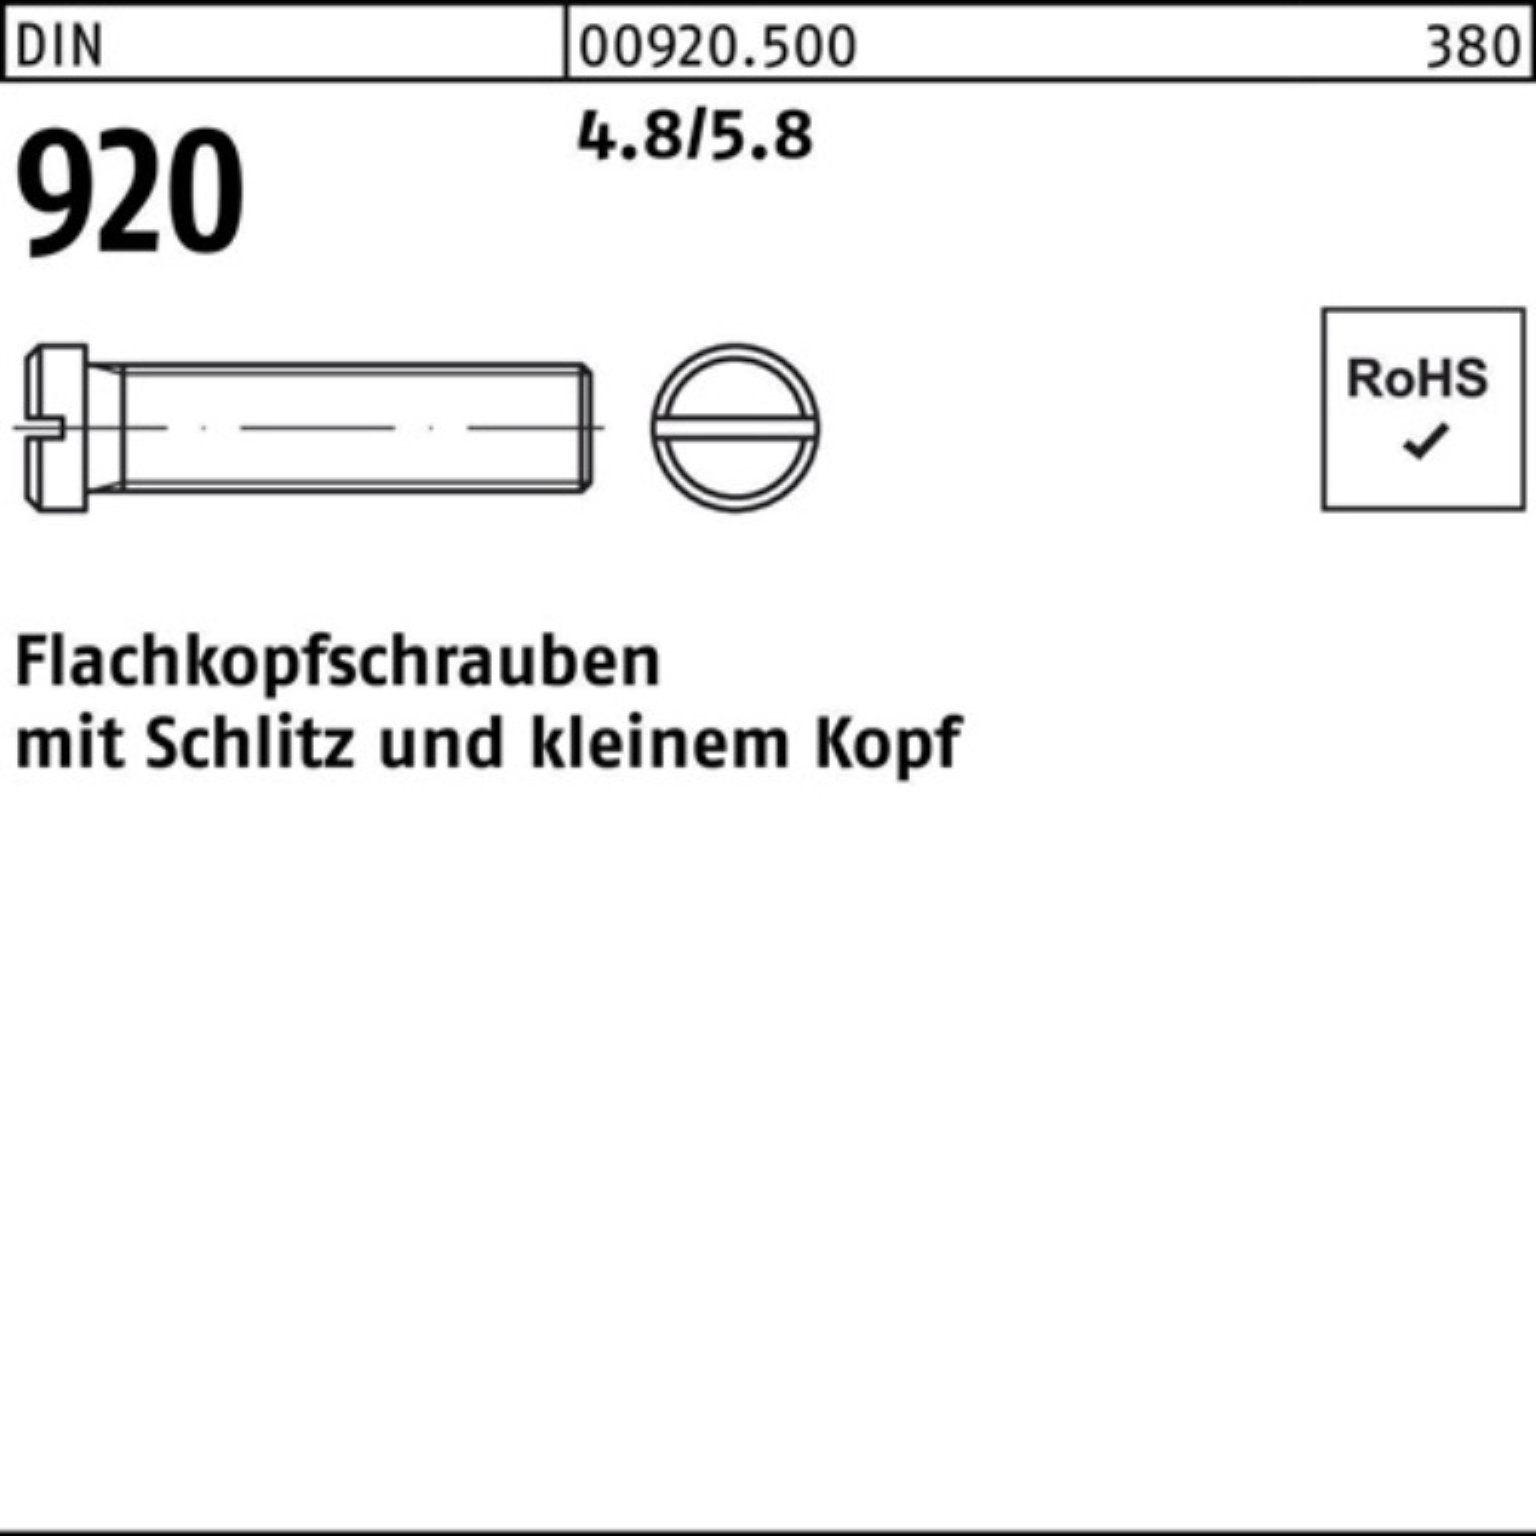 Reyher Schraube 100er Pack Flachkopfschraube DIN 920 Schlitz M3x 8 4.8/5.8 100 Stück